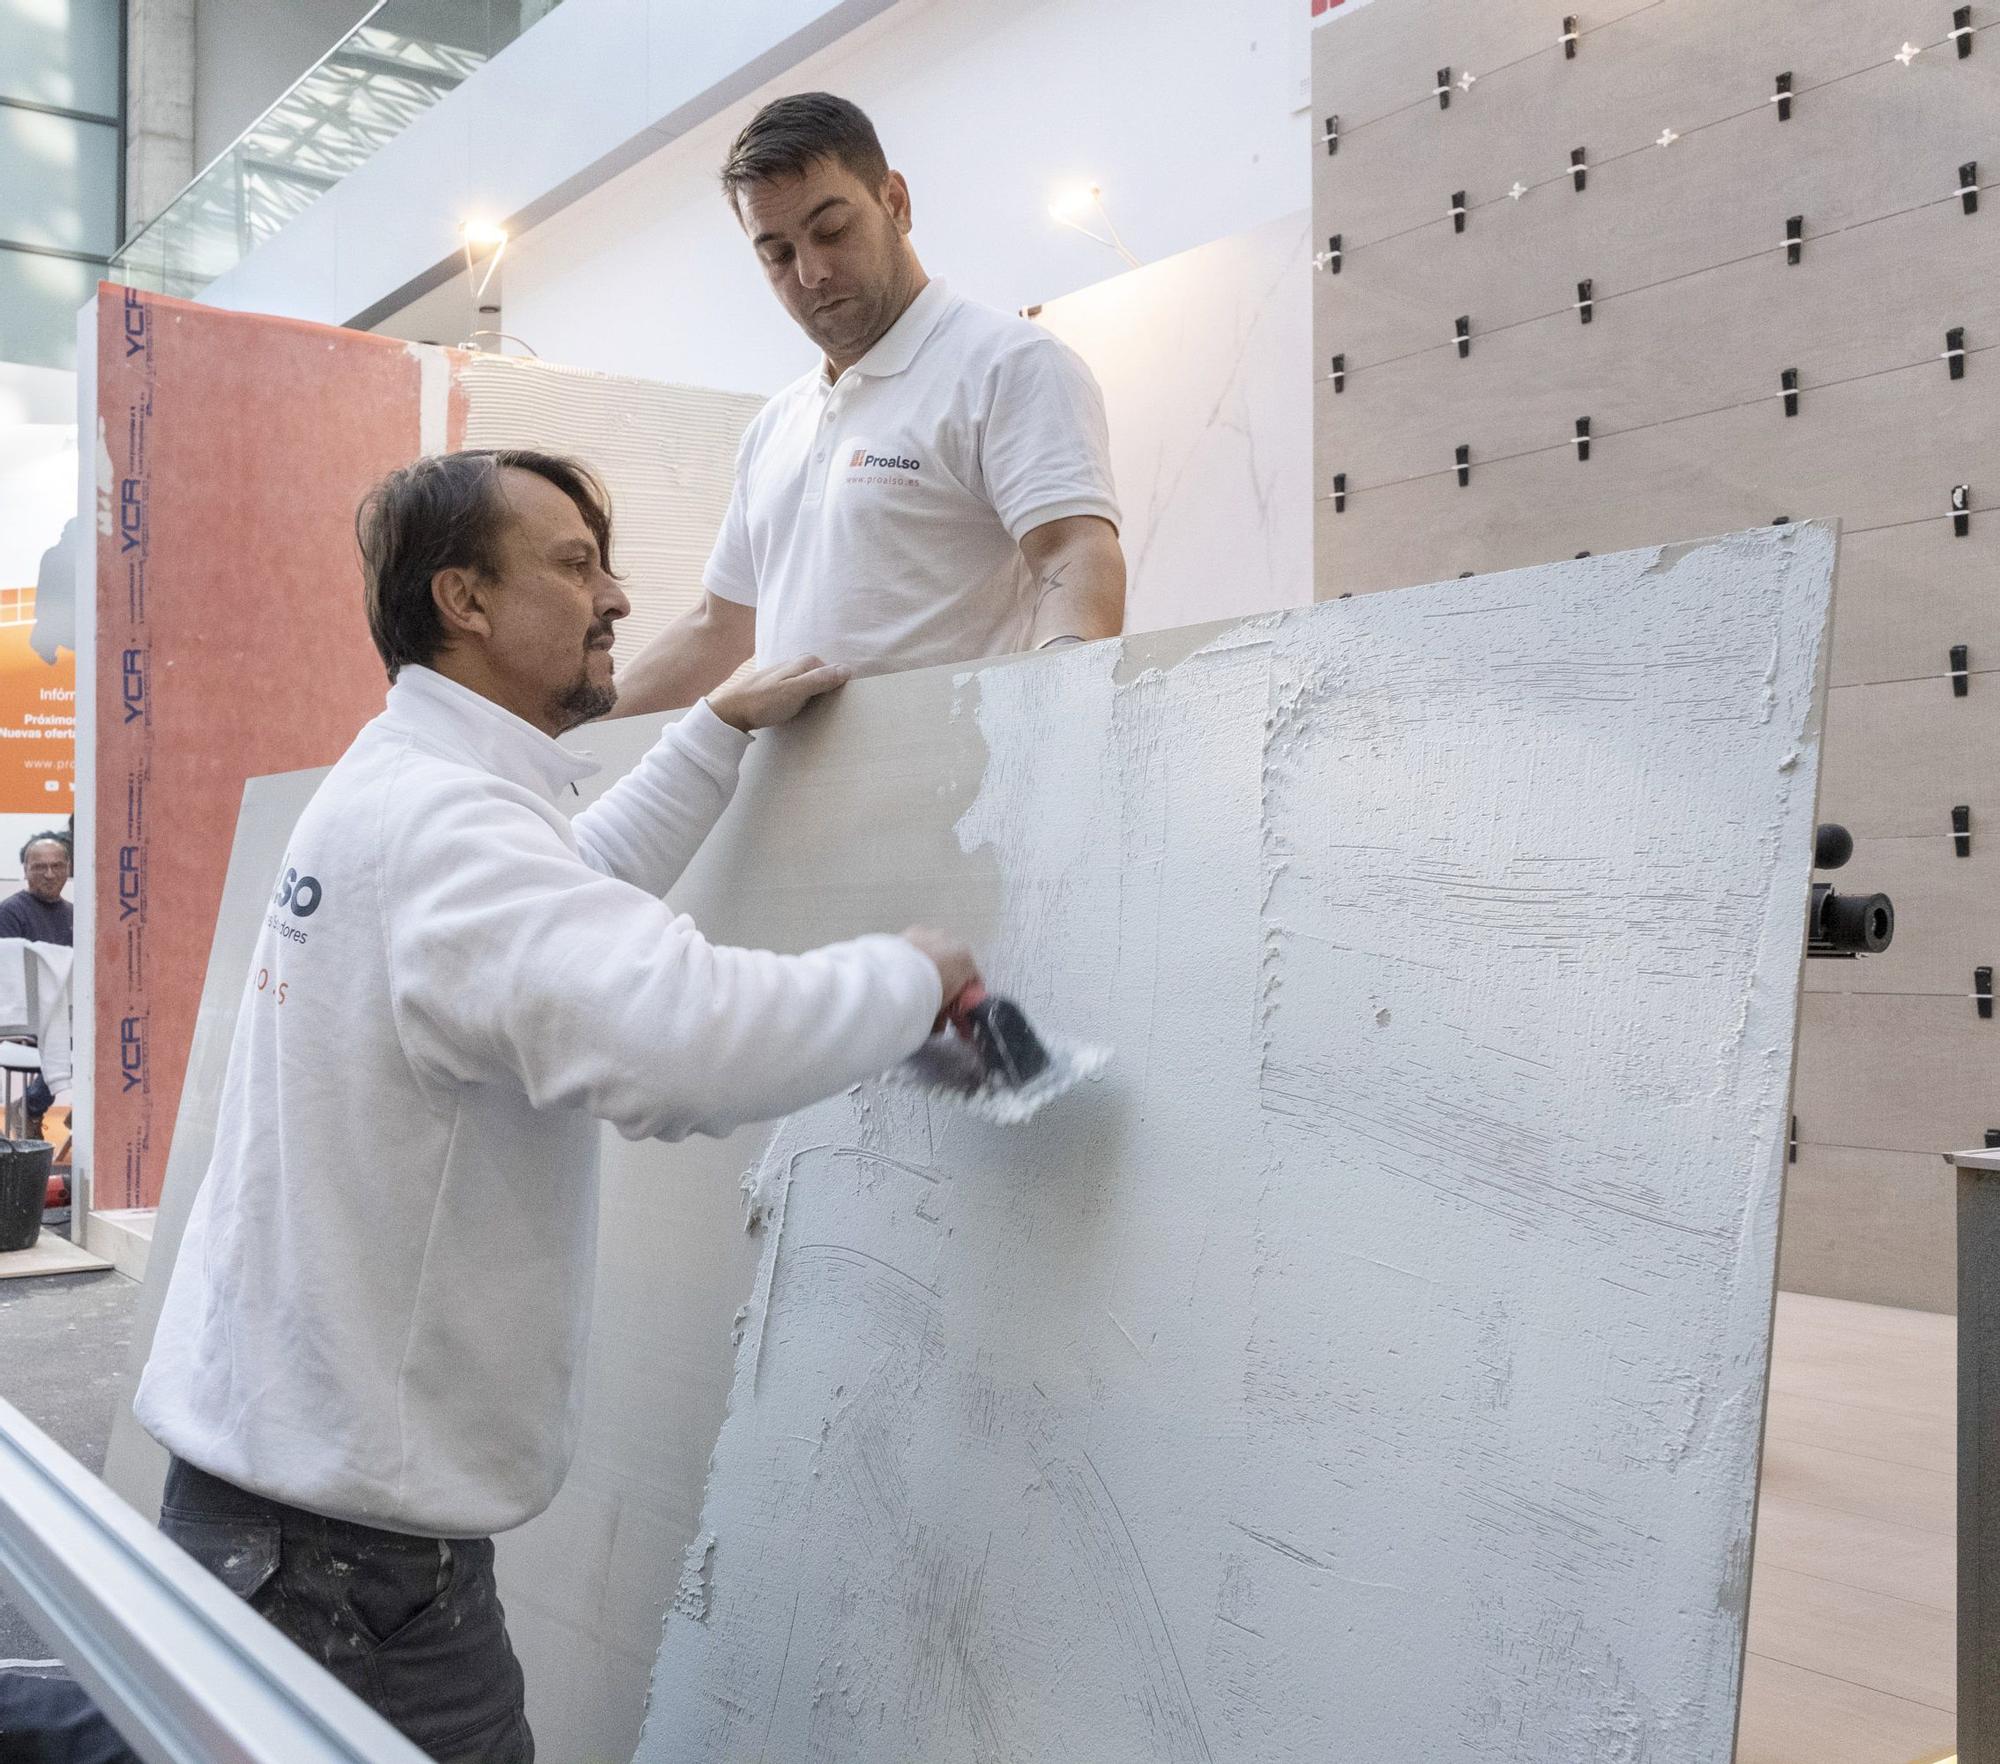 El sector azulejero produce grandes placas cerámicas de hasta tres metros.